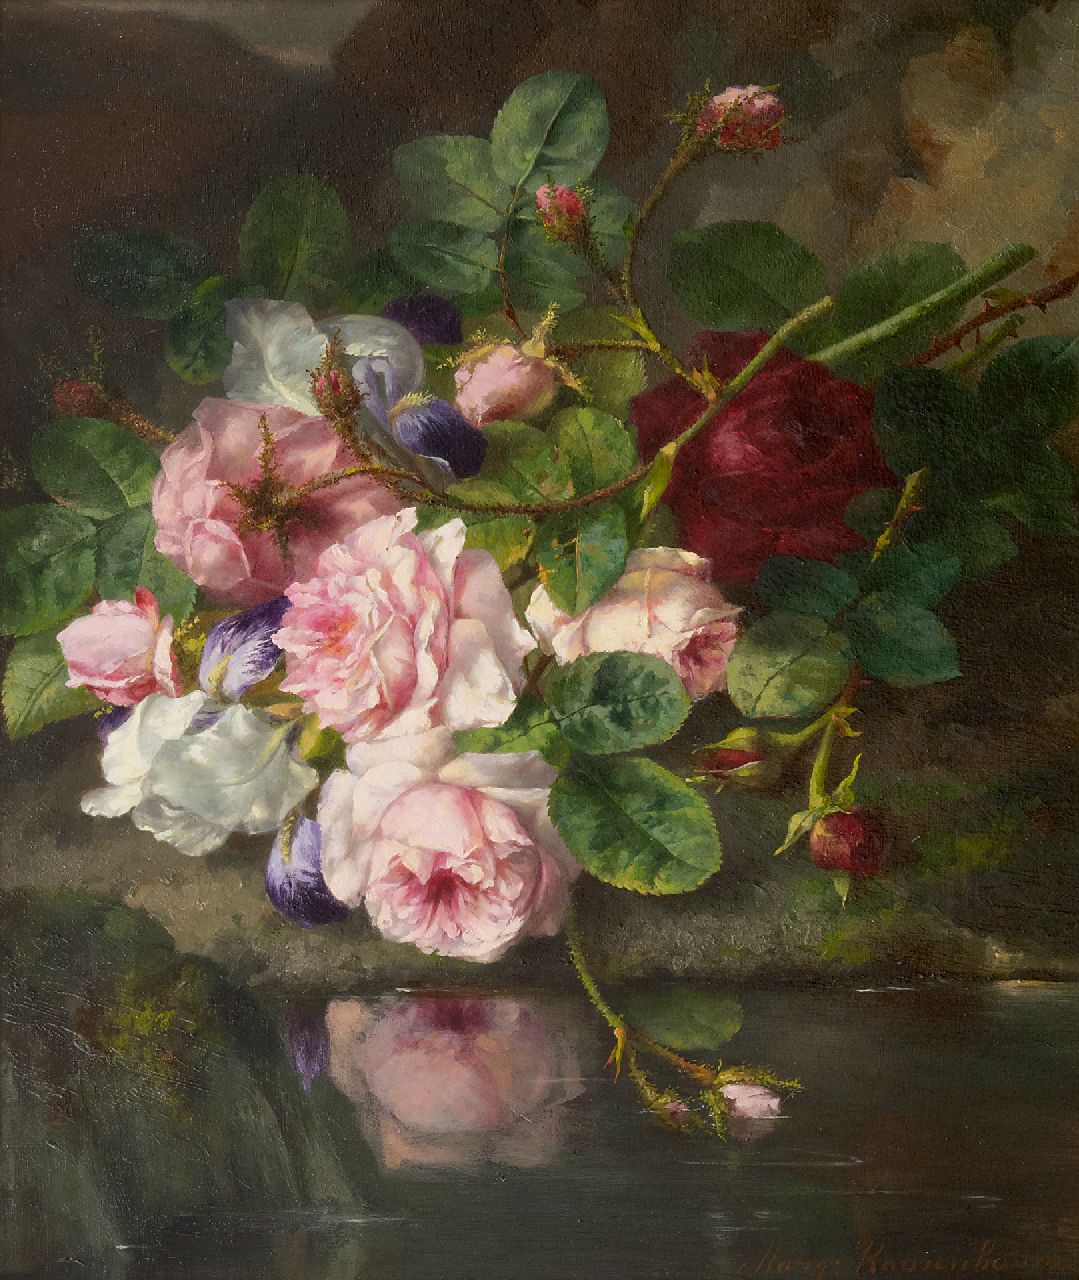 Roosenboom M.C.J.W.H.  | 'Margaretha' Cornelia Johanna Wilhelmina Henriëtta Roosenboom, Boeket rozen op de bosgrond, olieverf op paneel 45,4 x 37,3 cm, gesigneerd rechtsonder